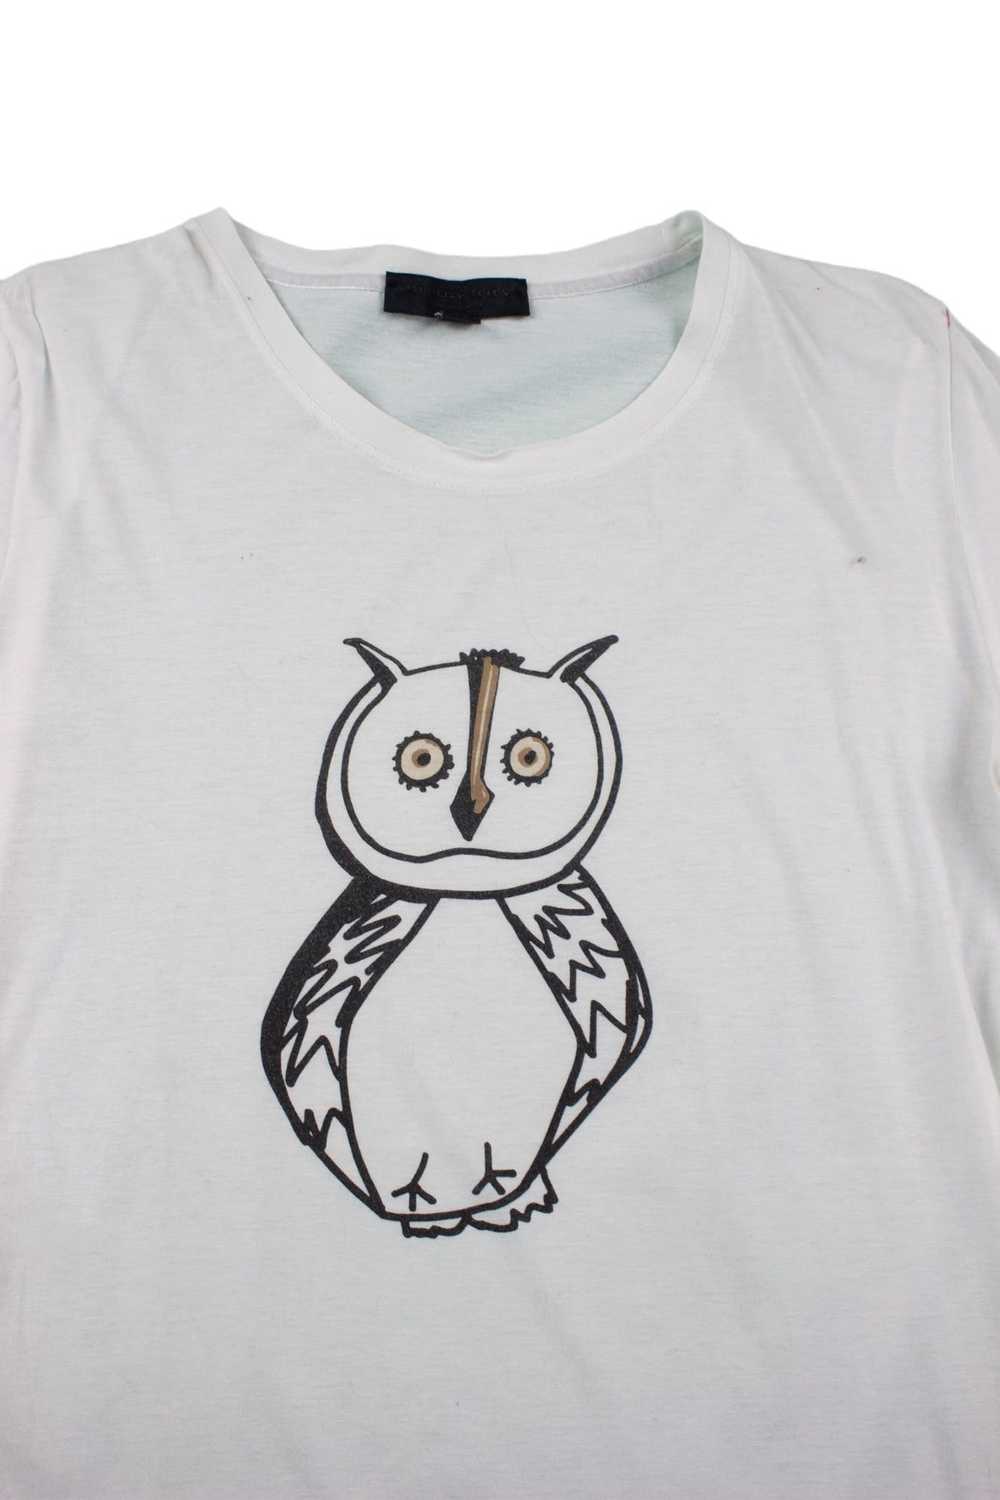 Burberry Prorsum Burberry Prorsum T shirt Owl Pri… - image 2